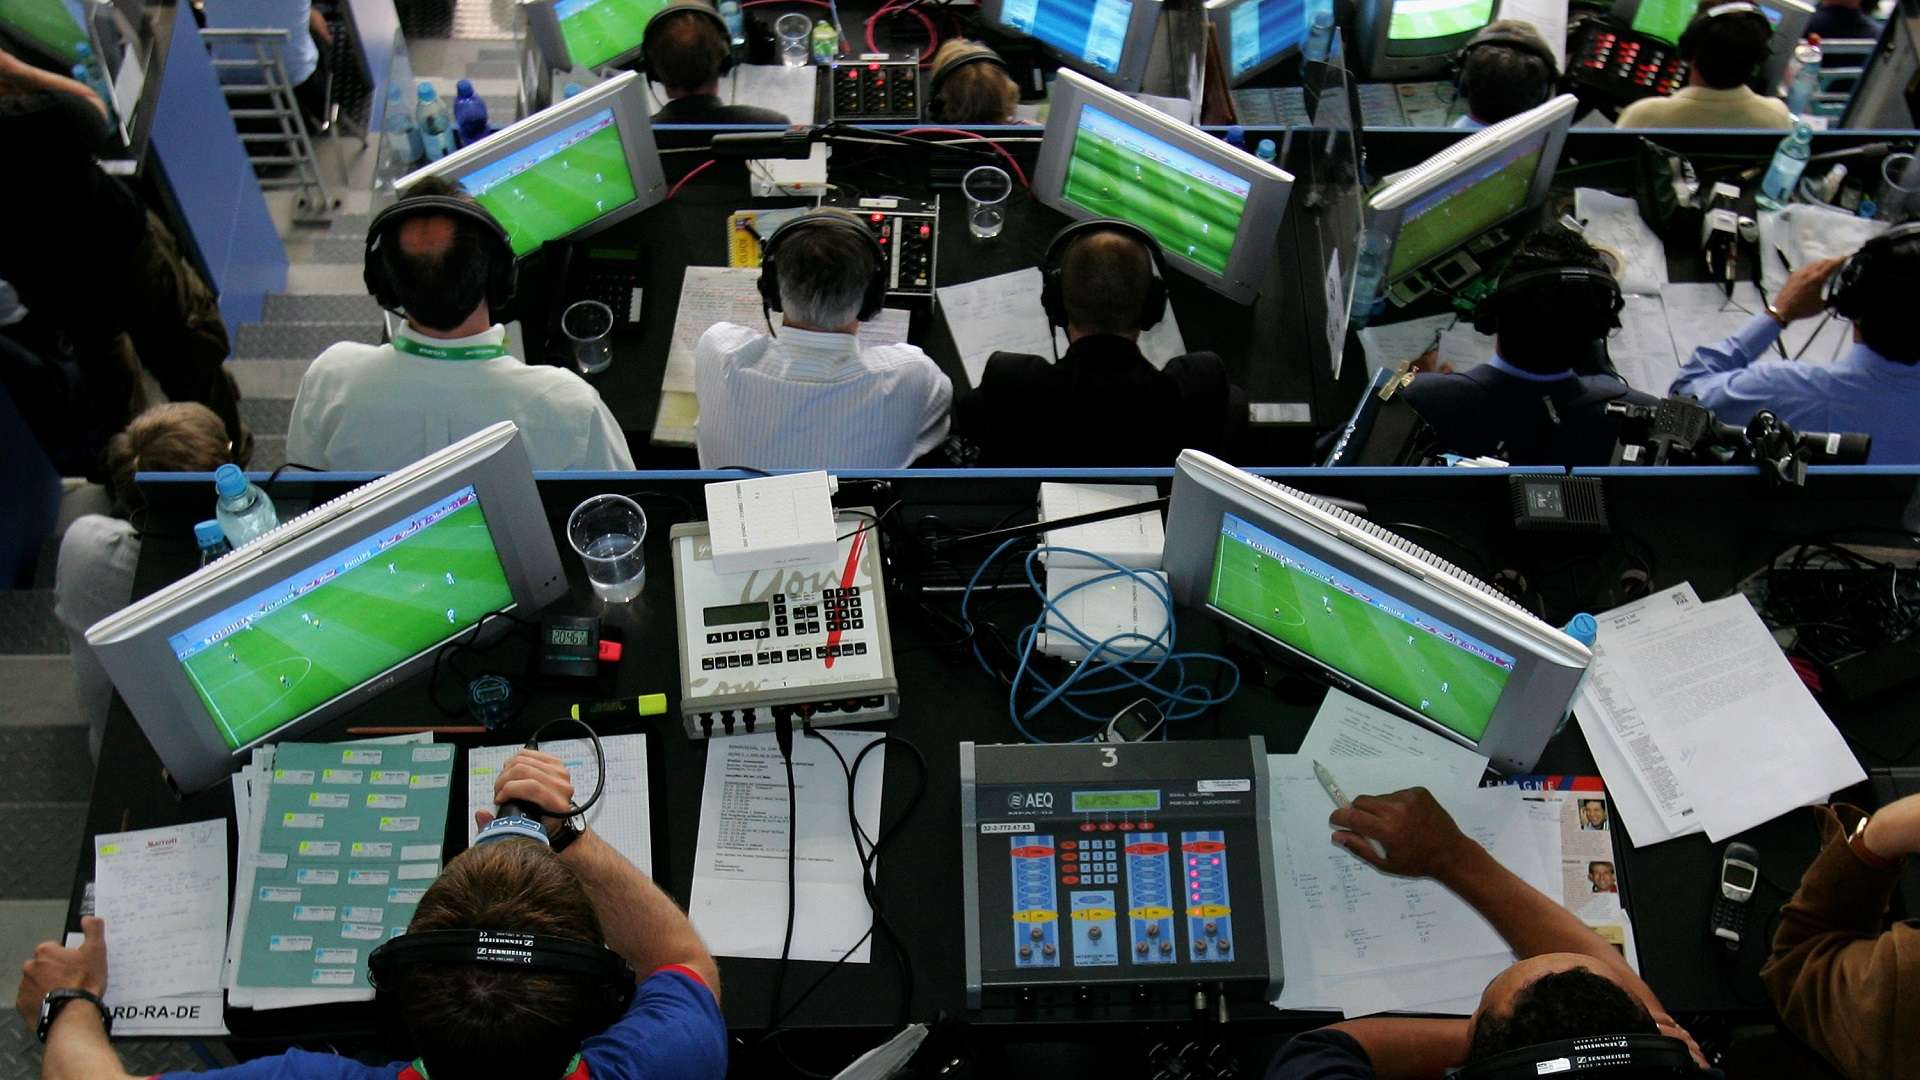 2015 Confederations Cup commentators